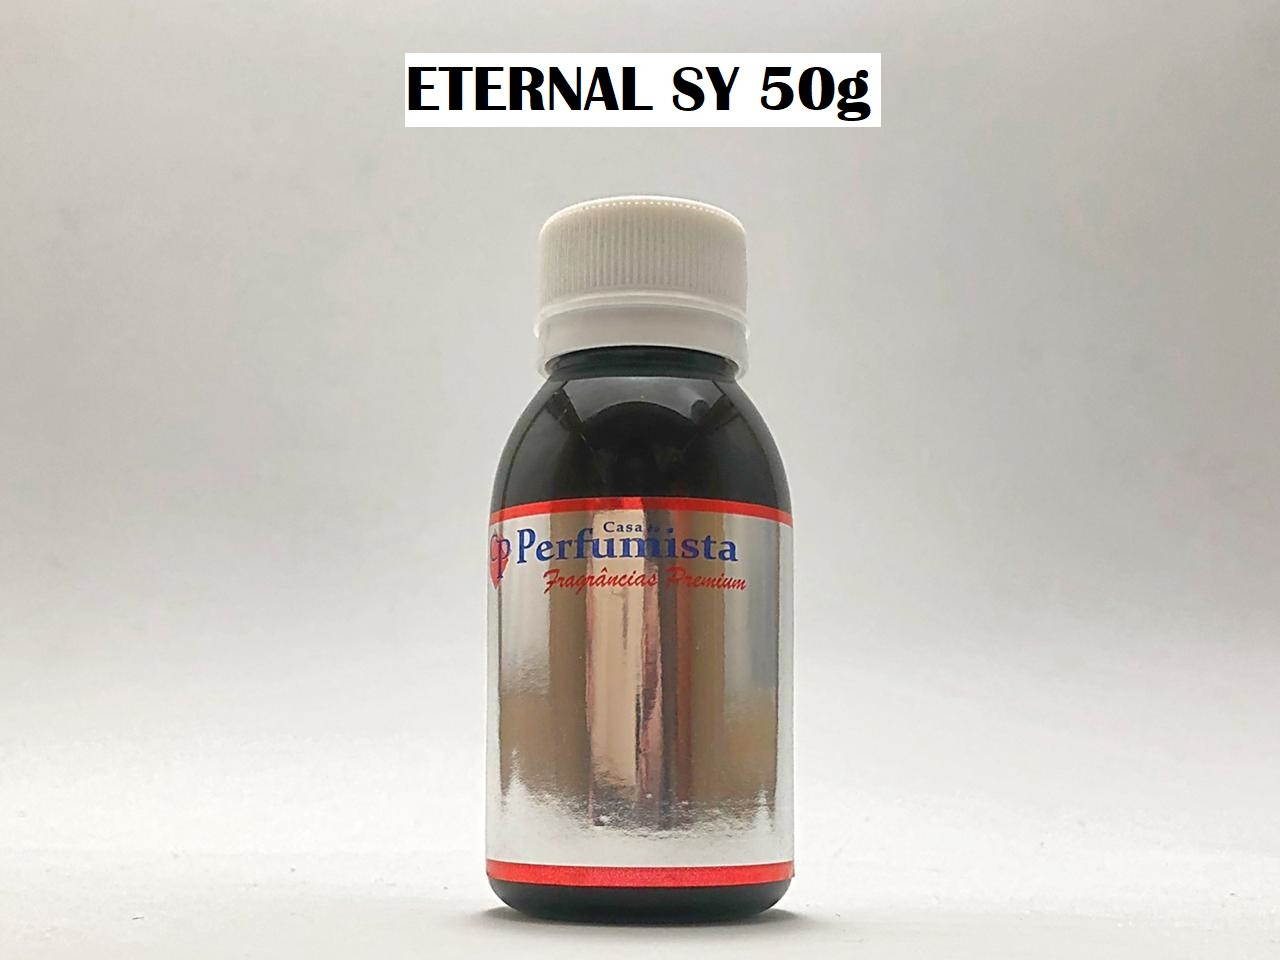 ETERNAL CP 50g - Inspiração: Eternity Feminino